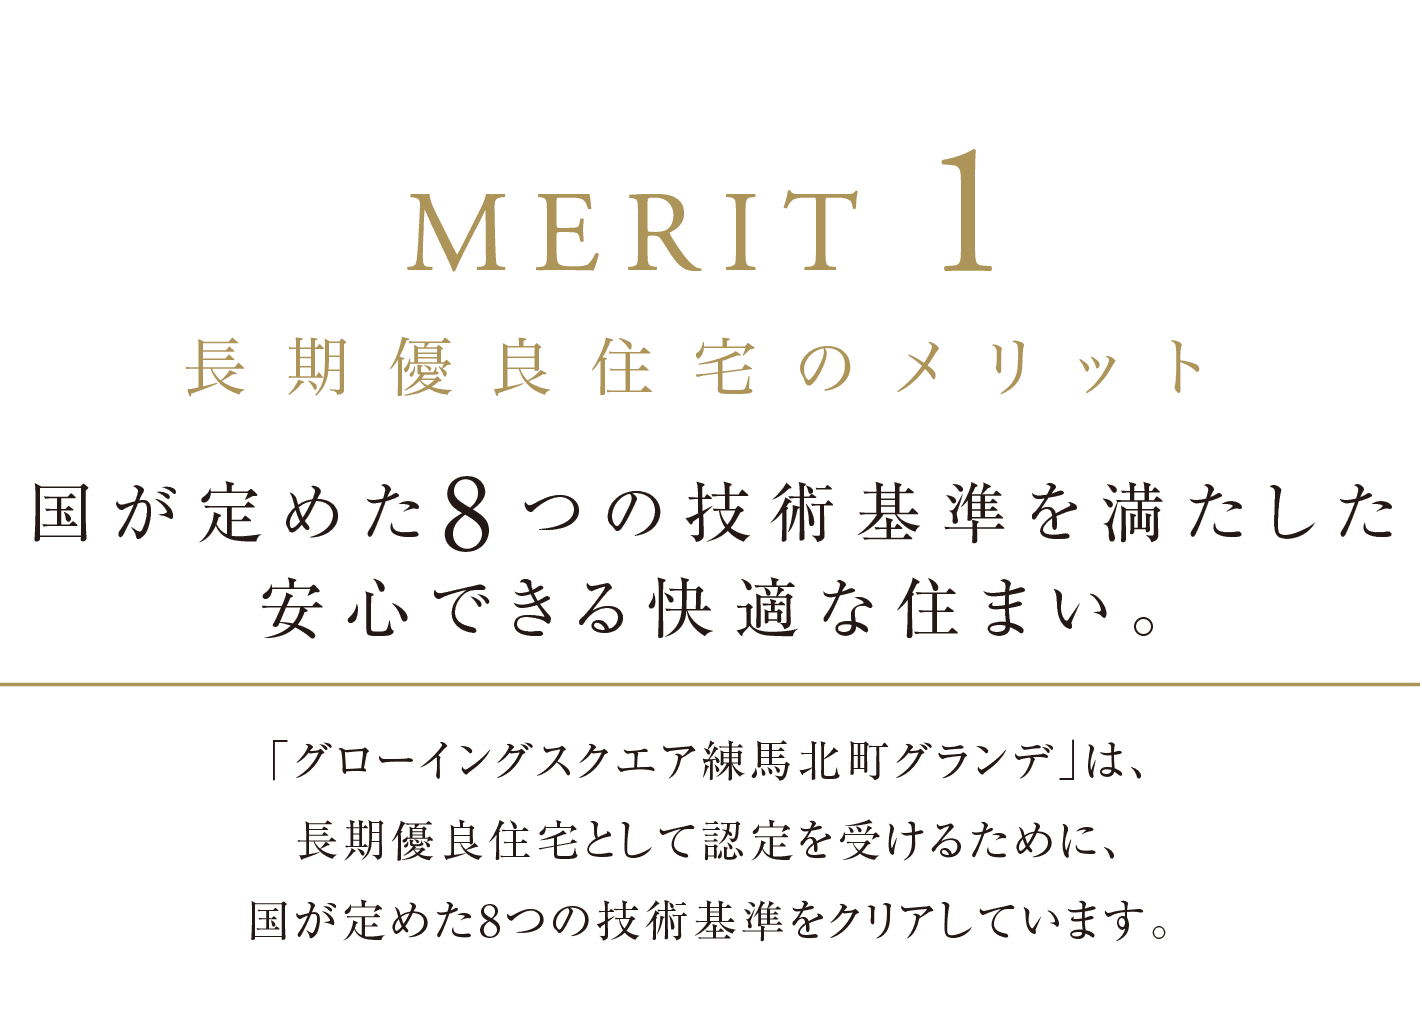 MERIT 1 長期優良住宅のメリット